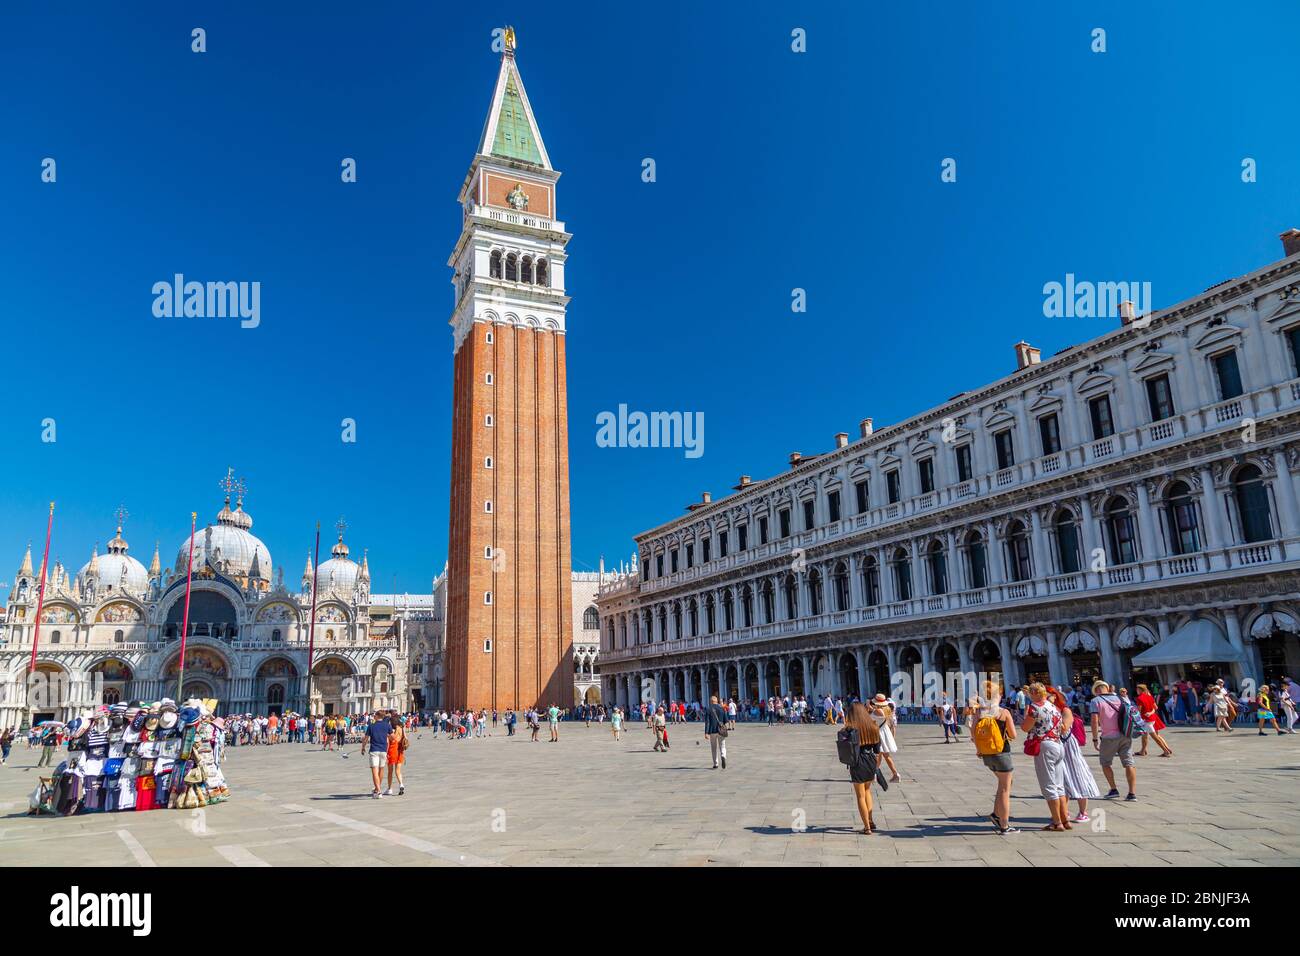 Vue sur Campanile et visiteurs de la place Saint-Marc et du ciel bleu, Venise, site classé au patrimoine mondial de l'UNESCO, Vénétie, Italie, Europe Banque D'Images